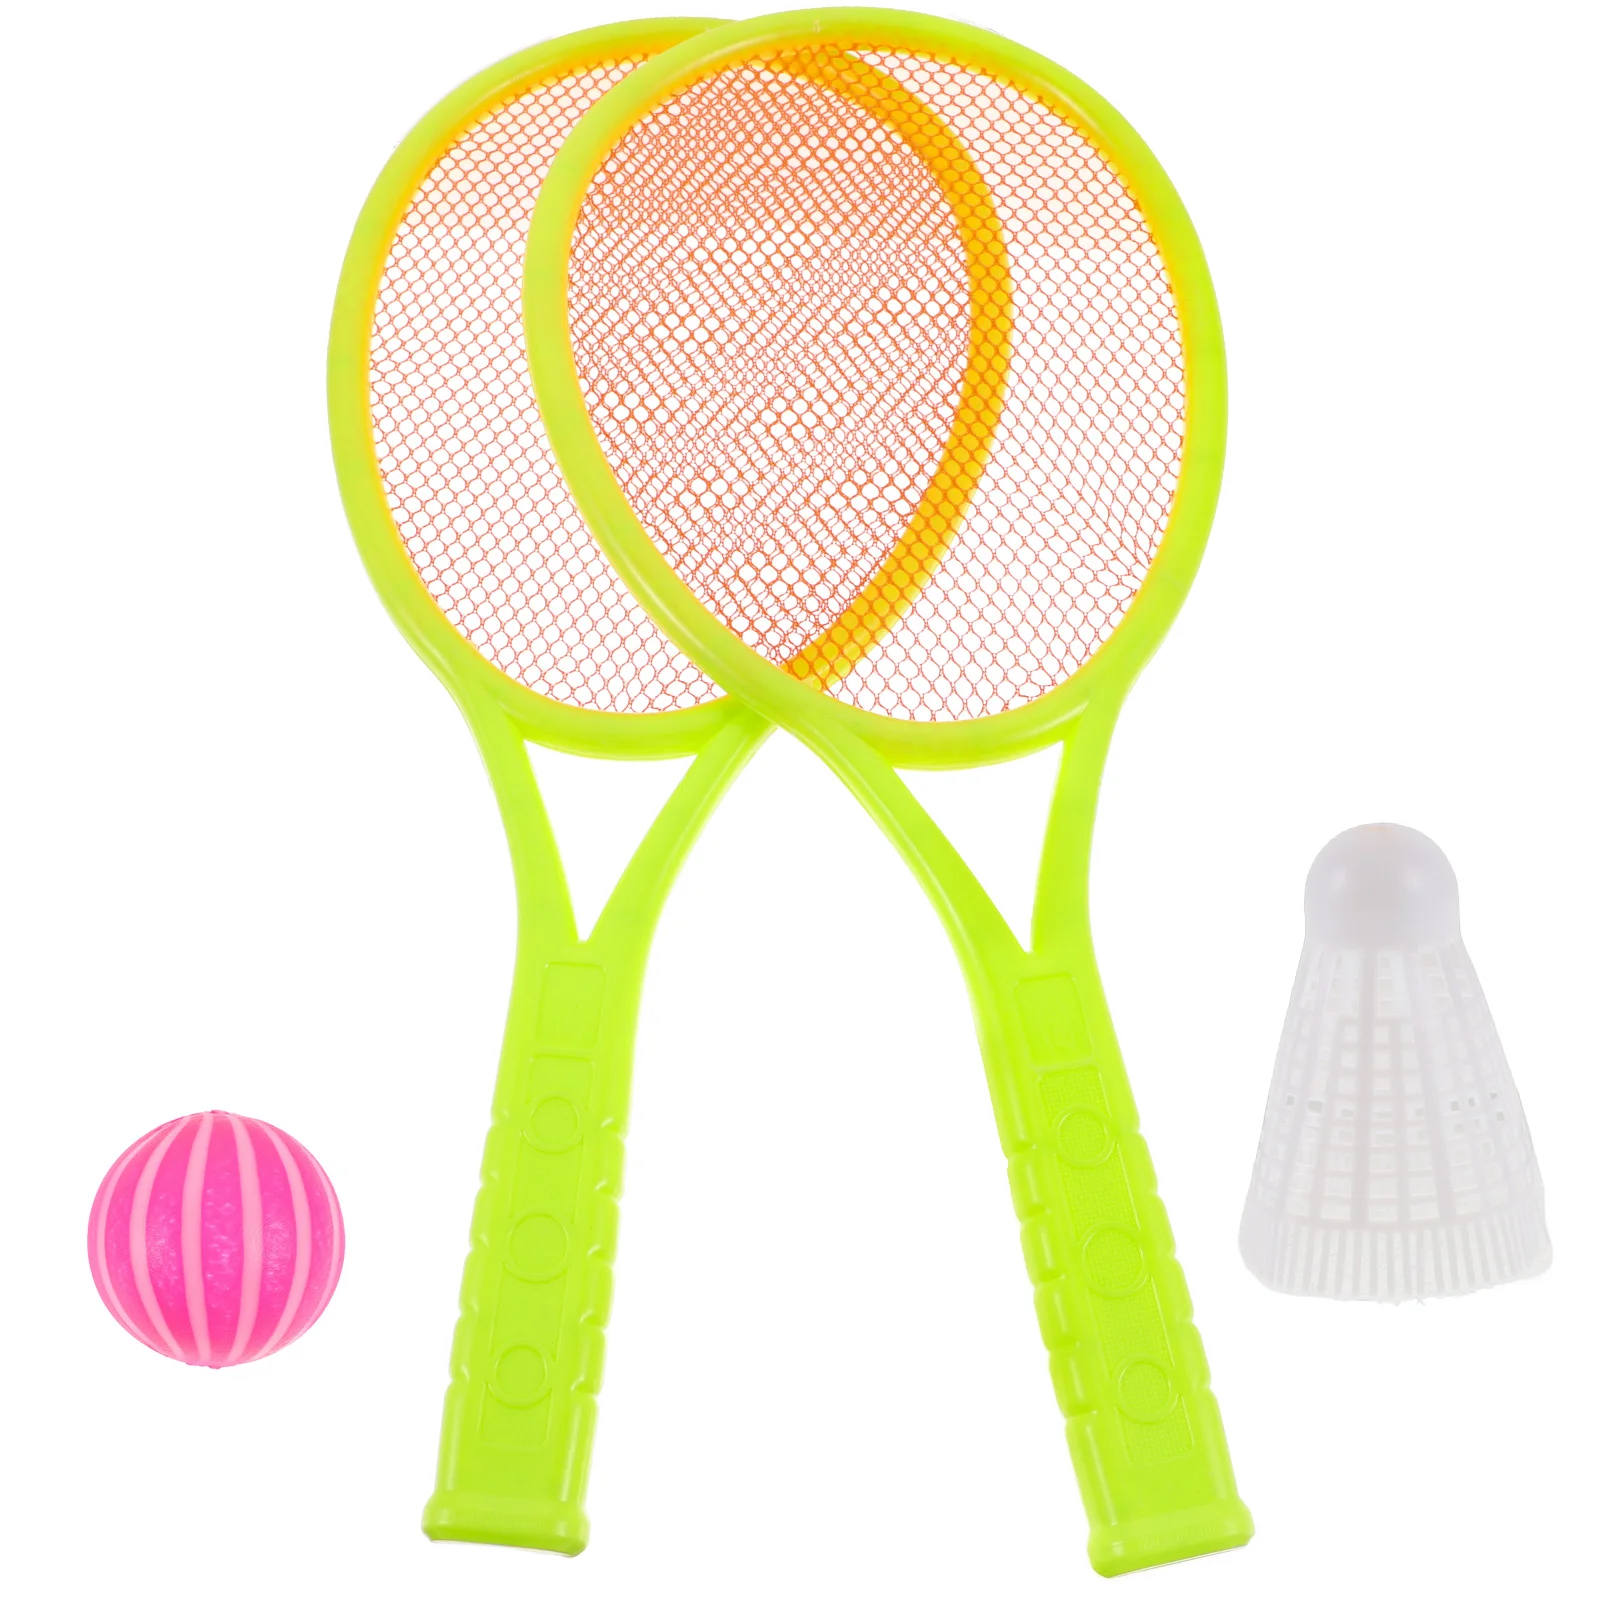 

Badminton Set Outdoor Playset Tennis Racket Adullt Aldult Plastic Racket Set Tennis Rackets 2 Pack